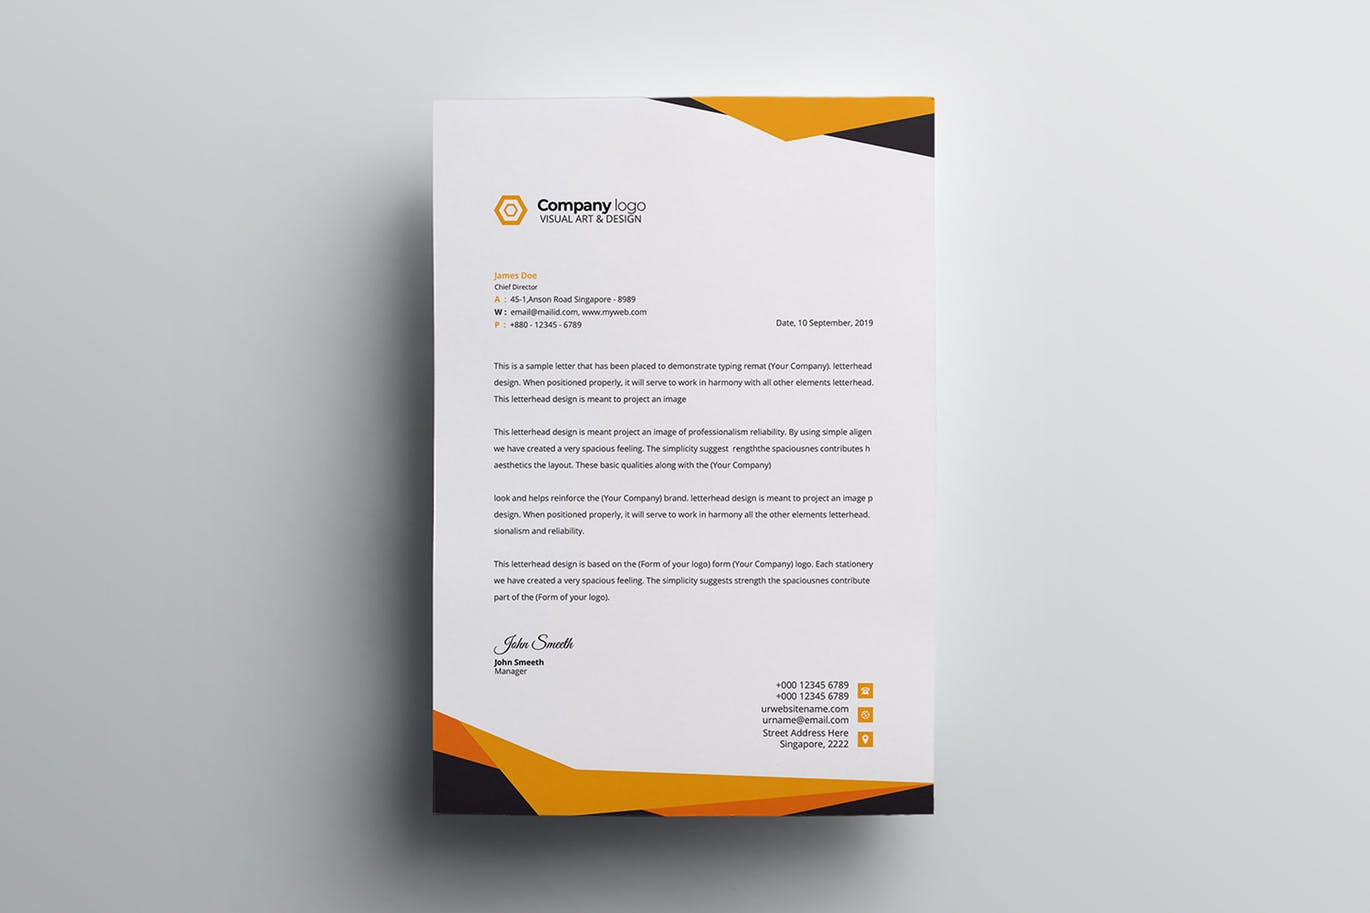 信息科技企业信封设计模板v4 Letterhead插图(2)